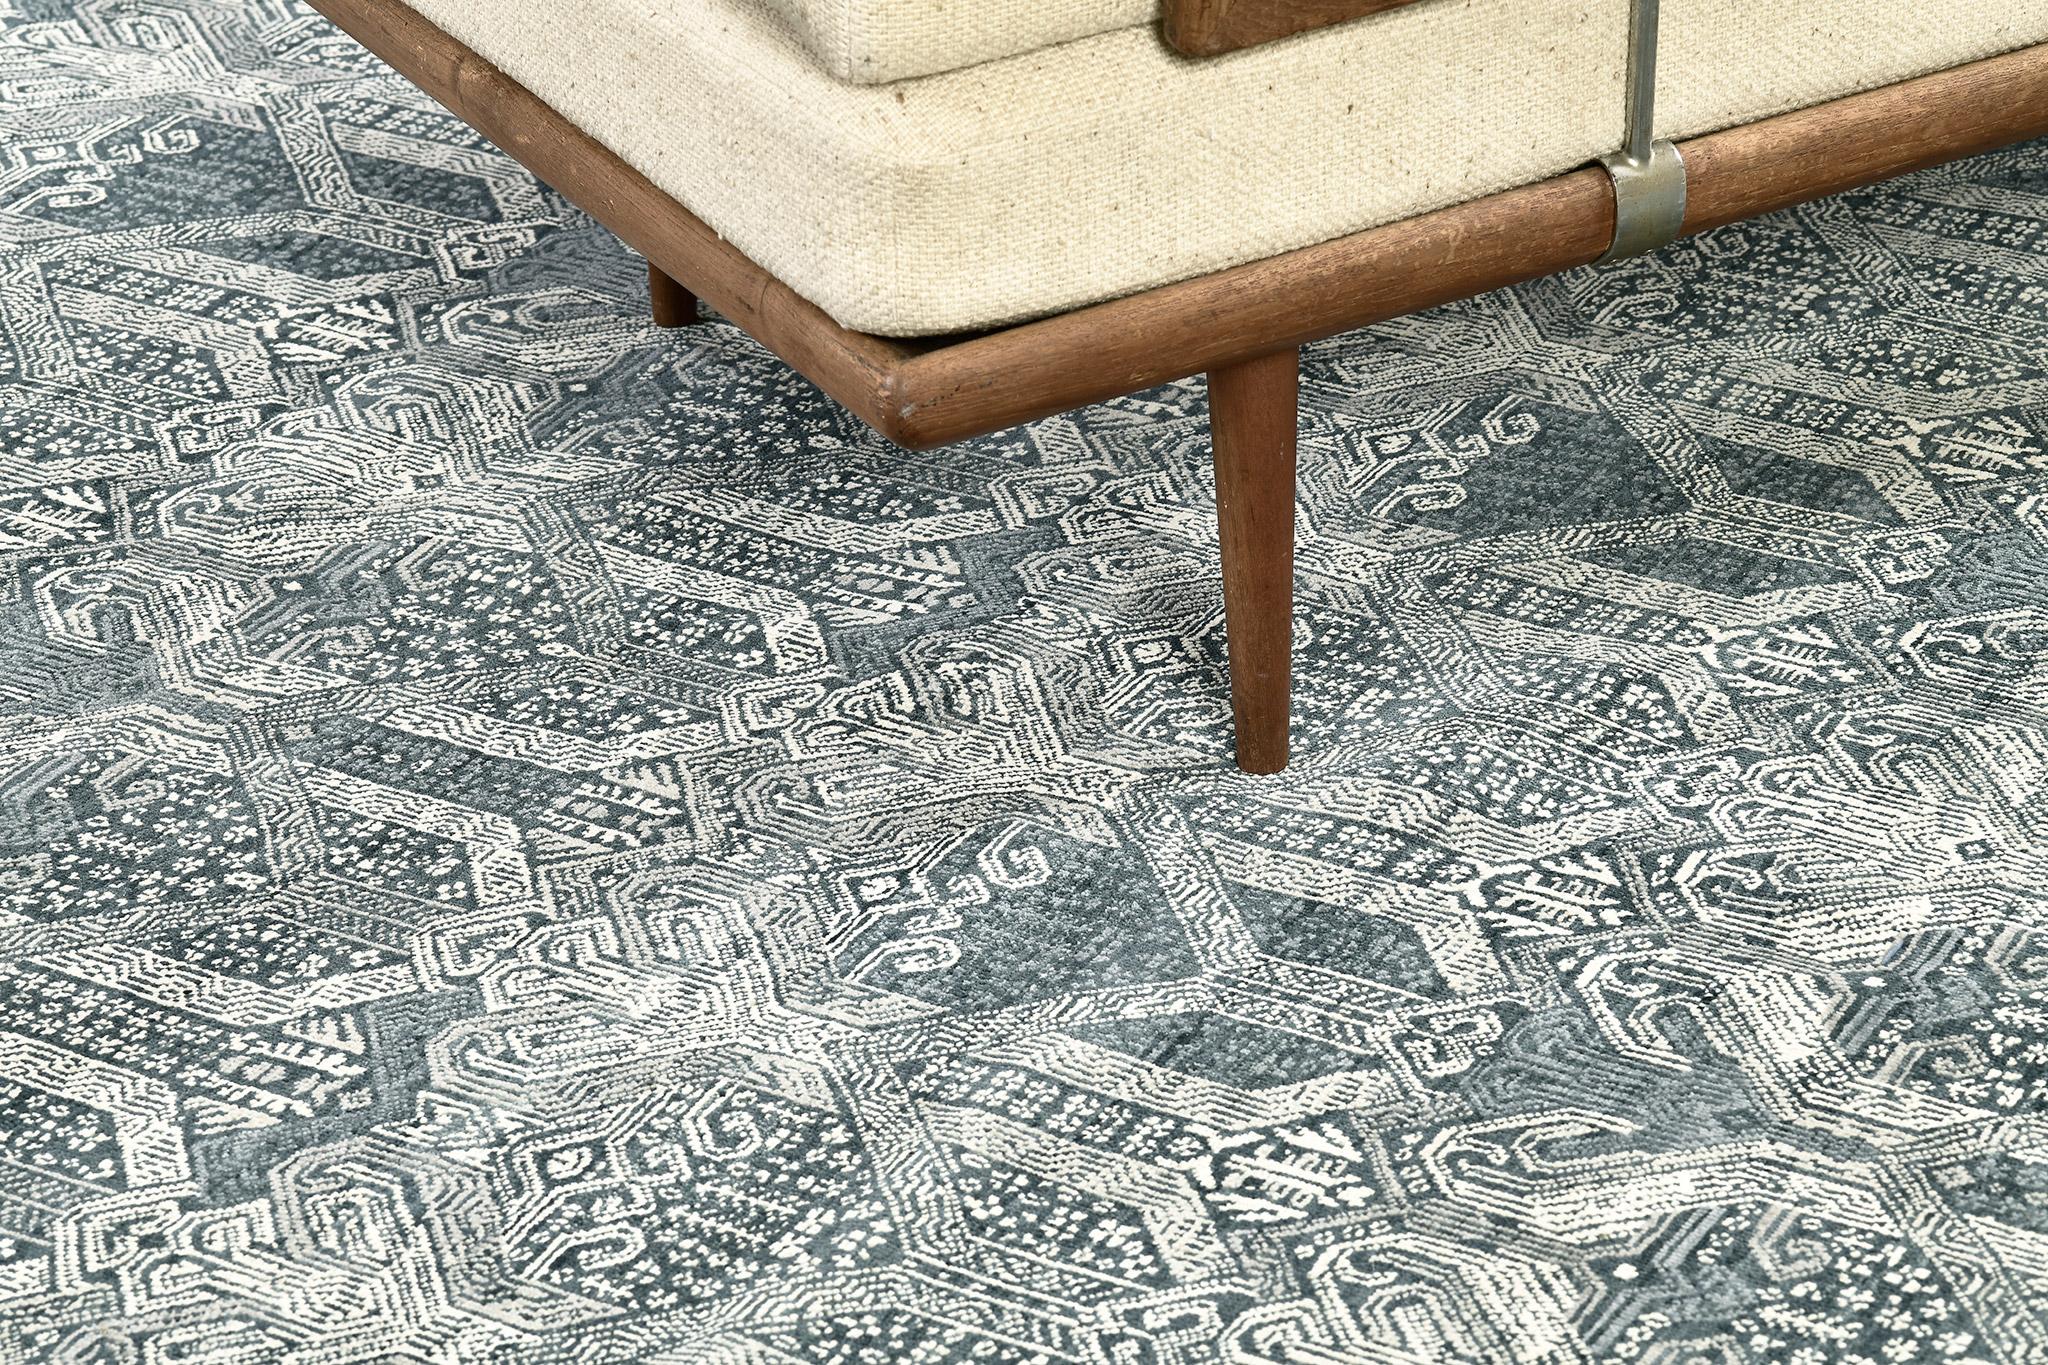 Ein wundervoller Teppich im Übergangsdesign, der sich durch die vielfältigen, tiefen Farbtöne von Preußischblau auszeichnet. Allover-Muster aus indisch inspirierten Elementen bilden eine großartige Kombination für dieses Kunstwerk. Einfach